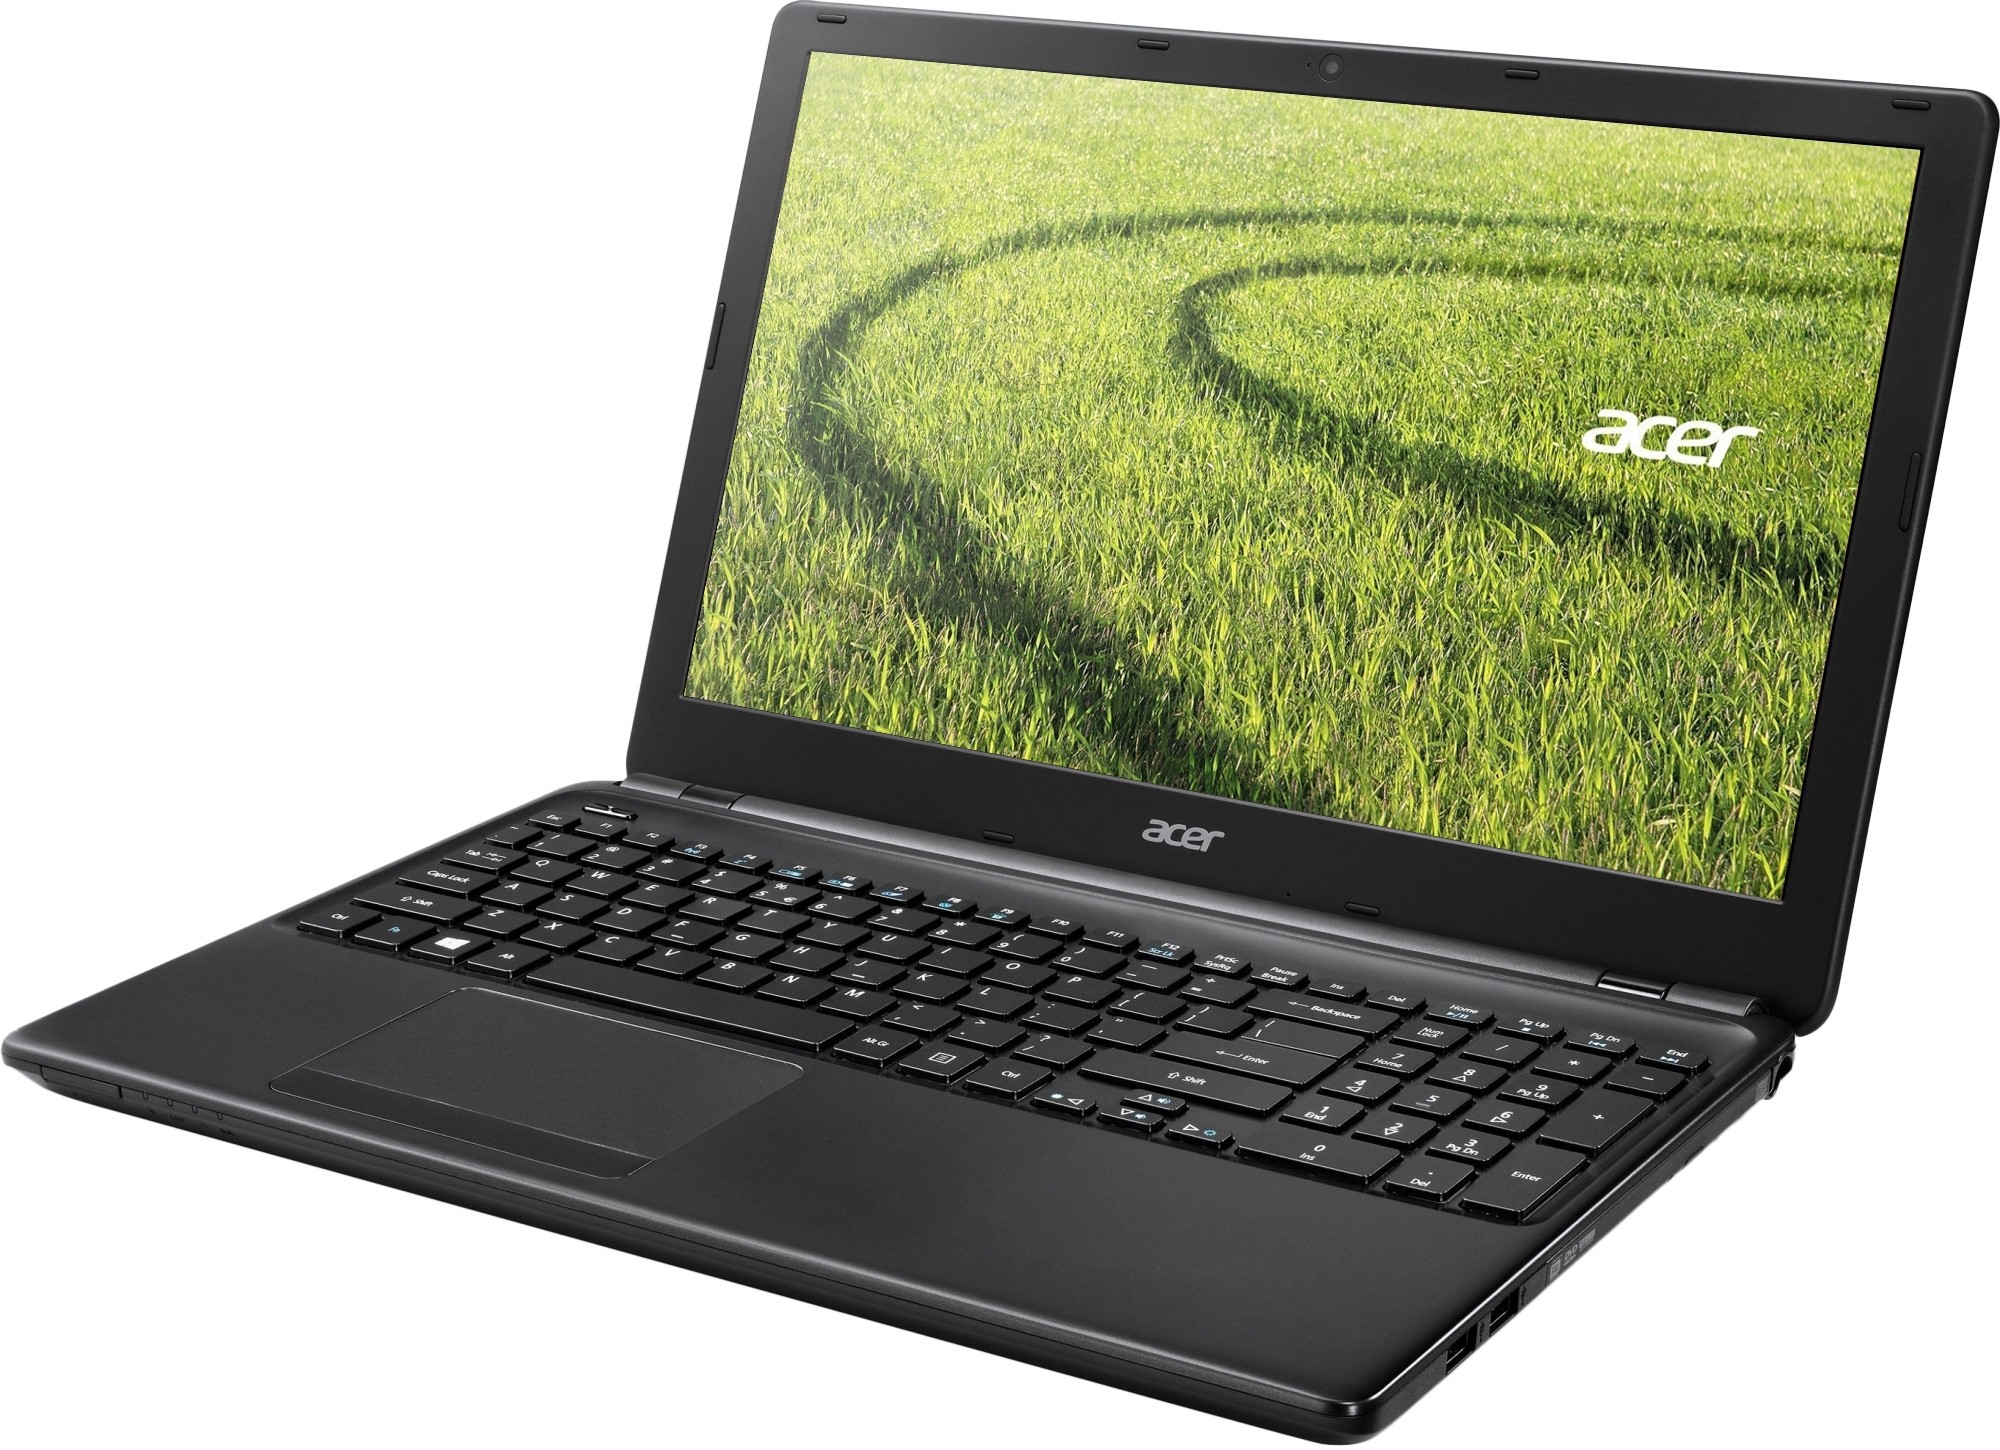 Ноутбук Acer Купить Харьков